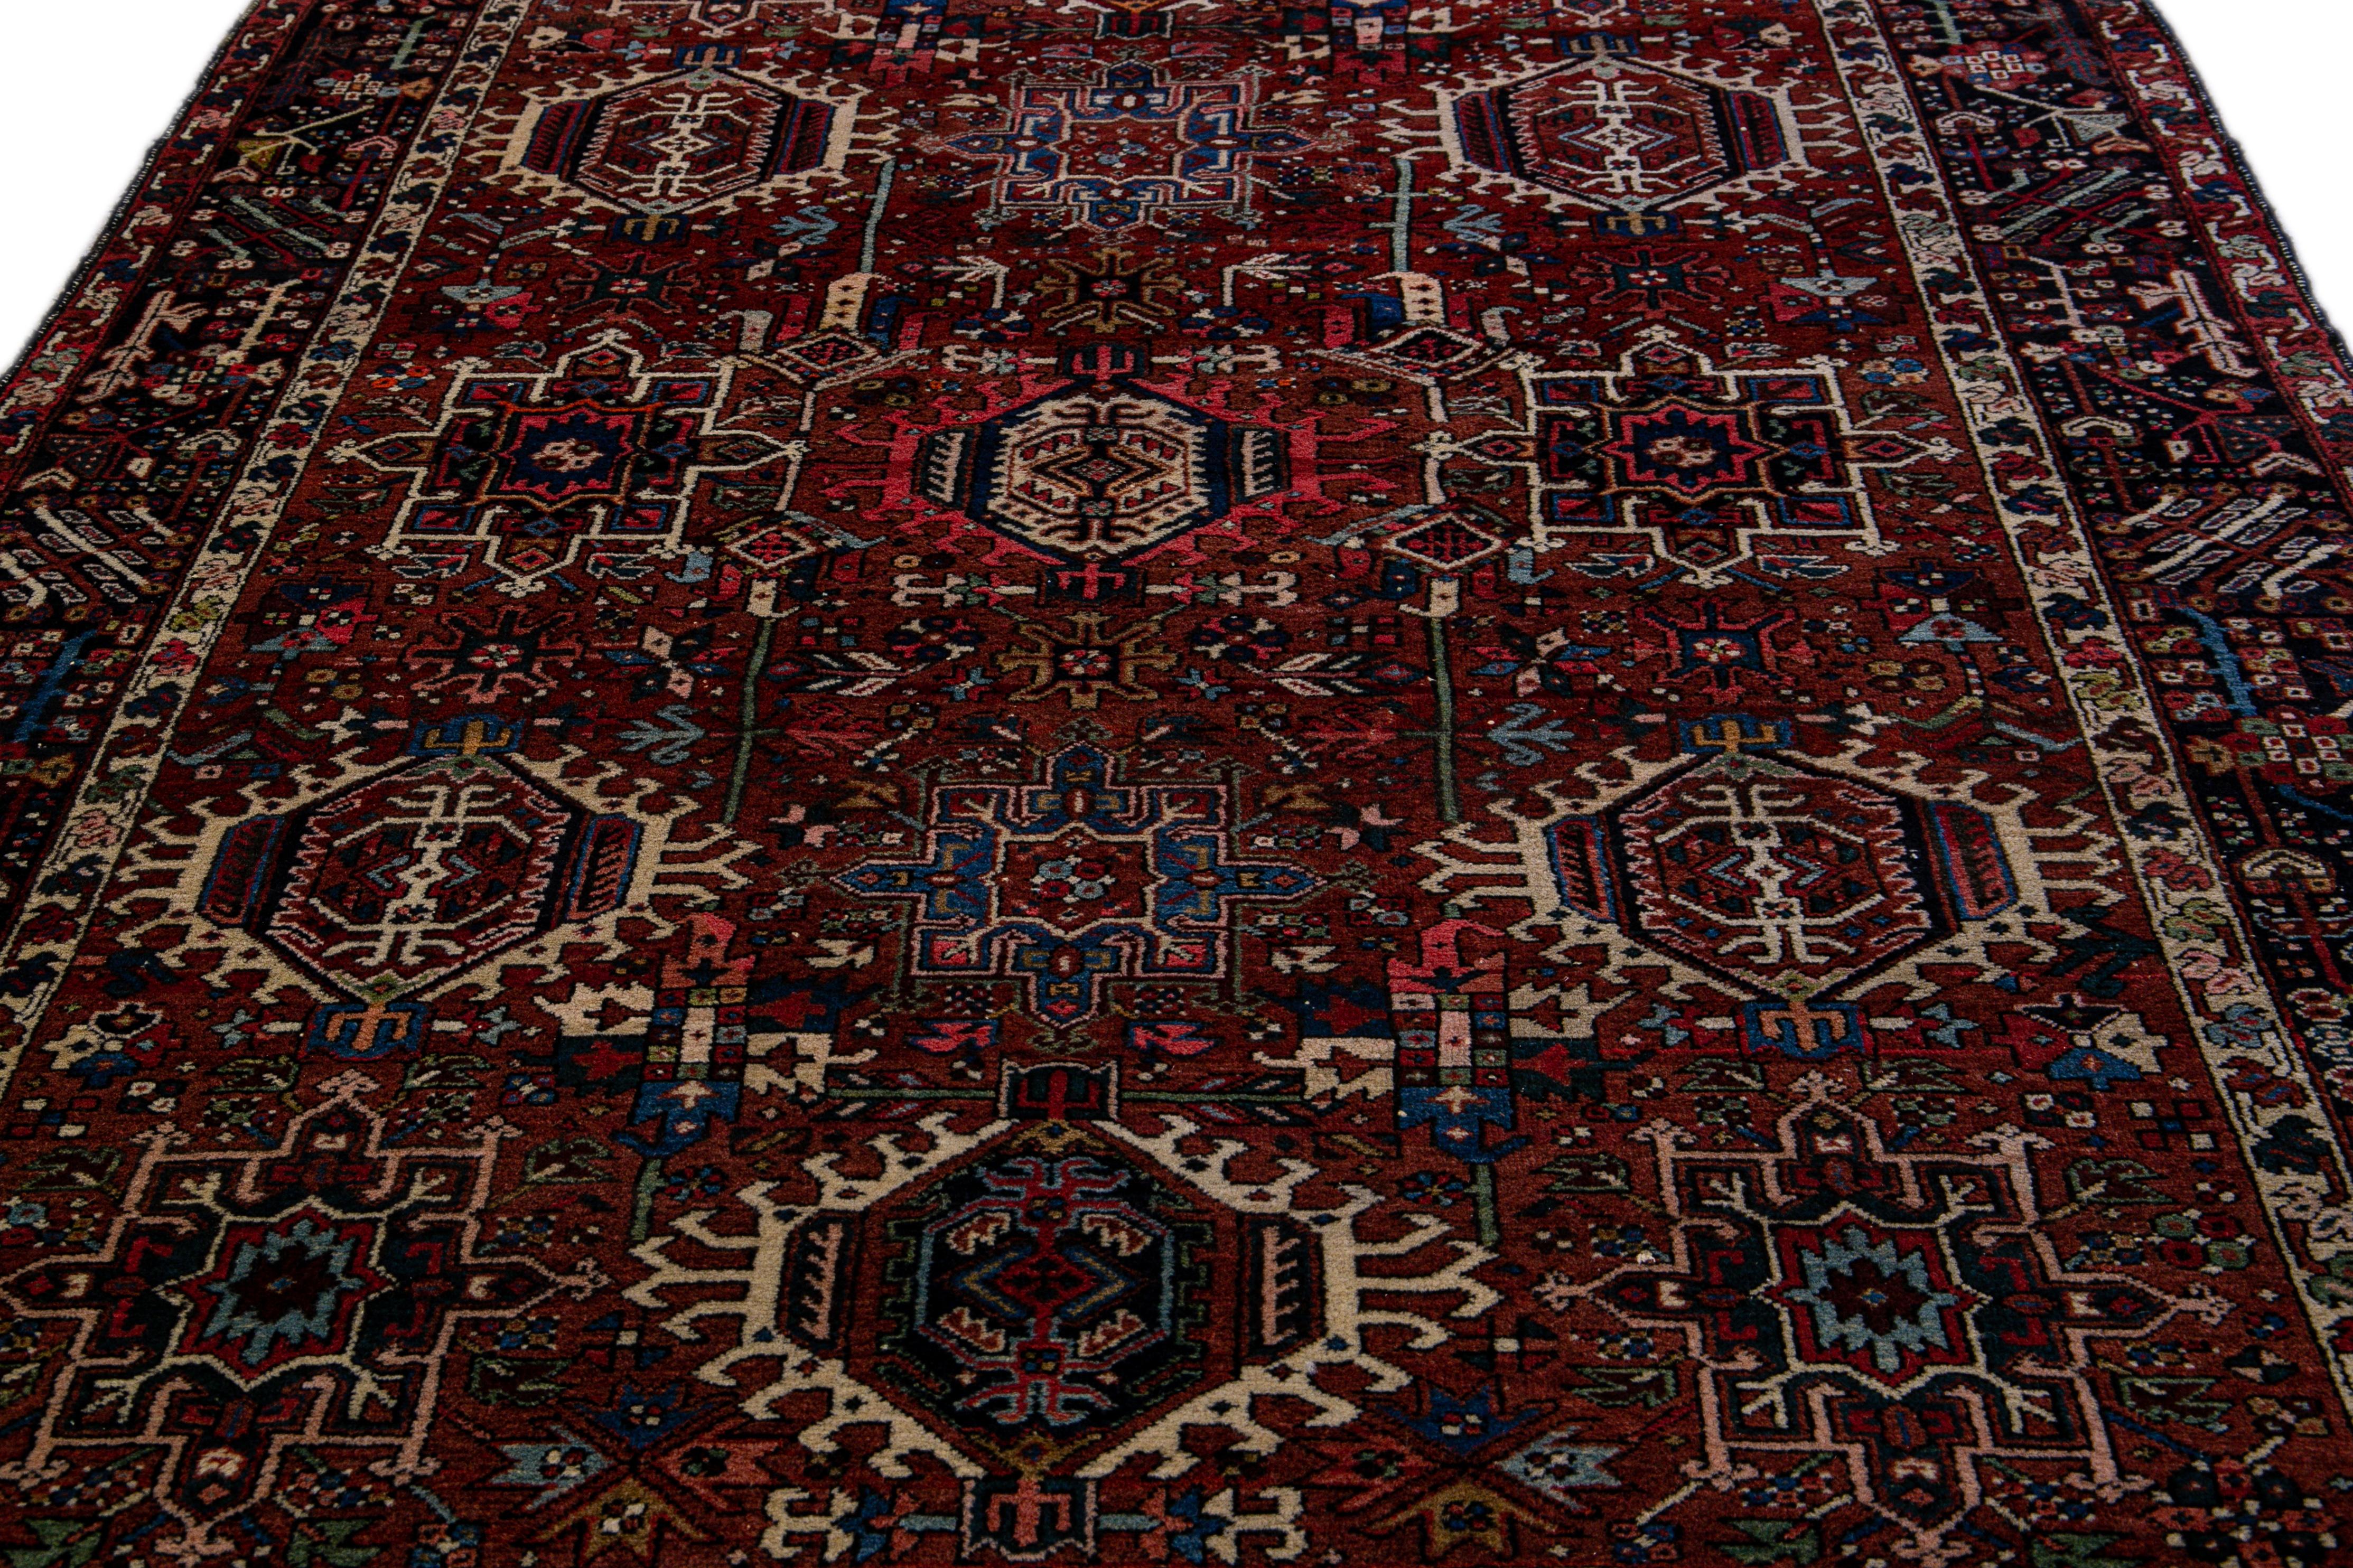 Magnifique tapis antique Heriz en laine nouée à la main avec un champ rouille. Ce tapis présente un cadre bleu et des accents multicolores dans un magnifique motif floral géométrique à médaillons.

Ce tapis mesure 6'2